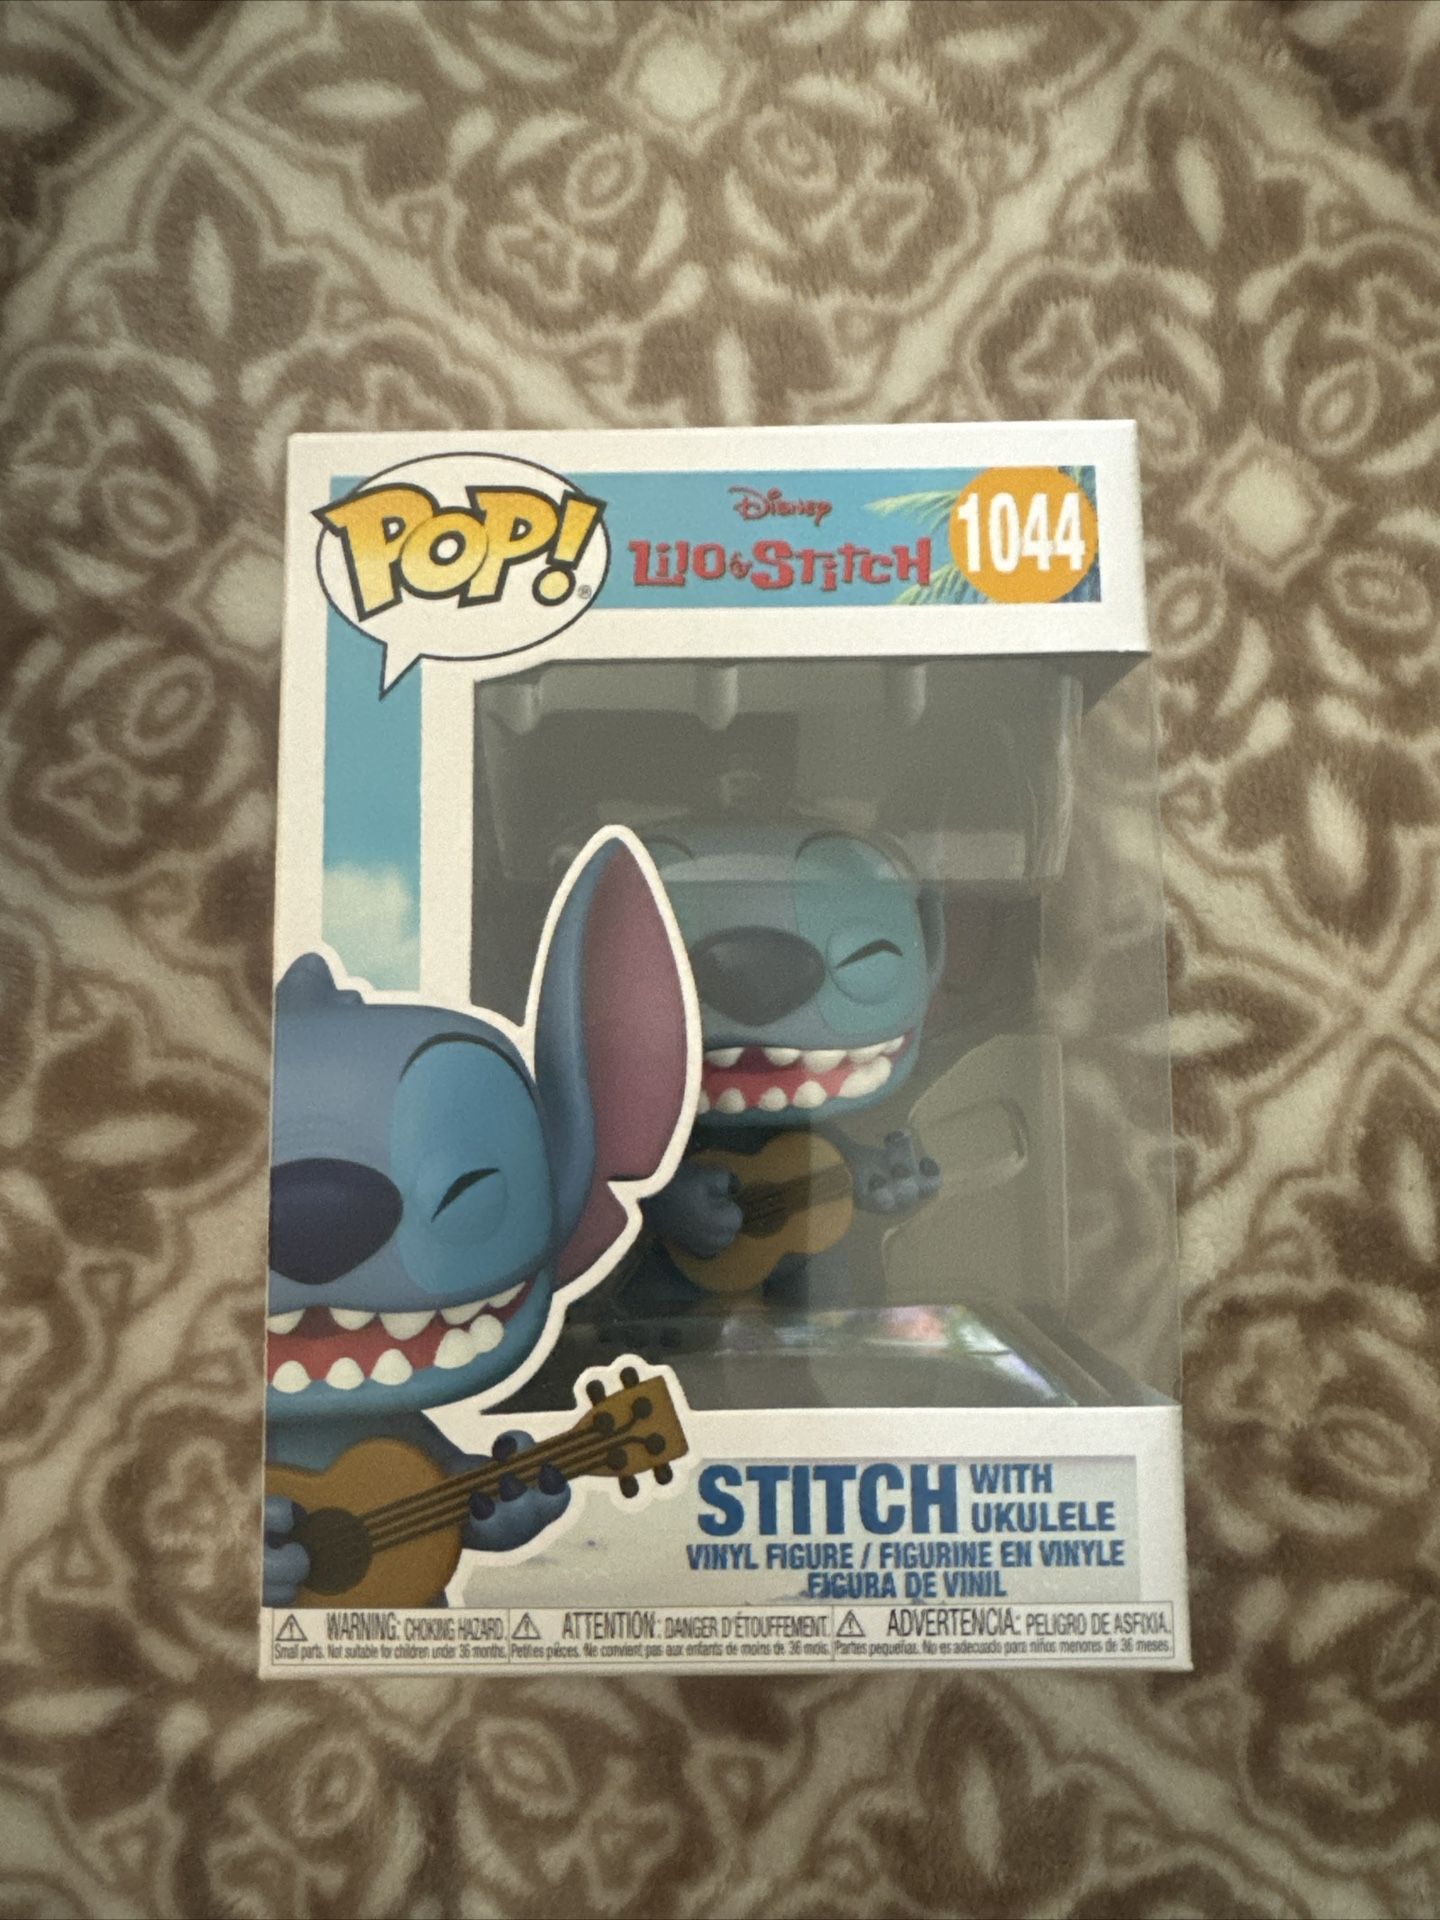 Stitch with Ukulele Funko Pop! (Lilo & Stitch)